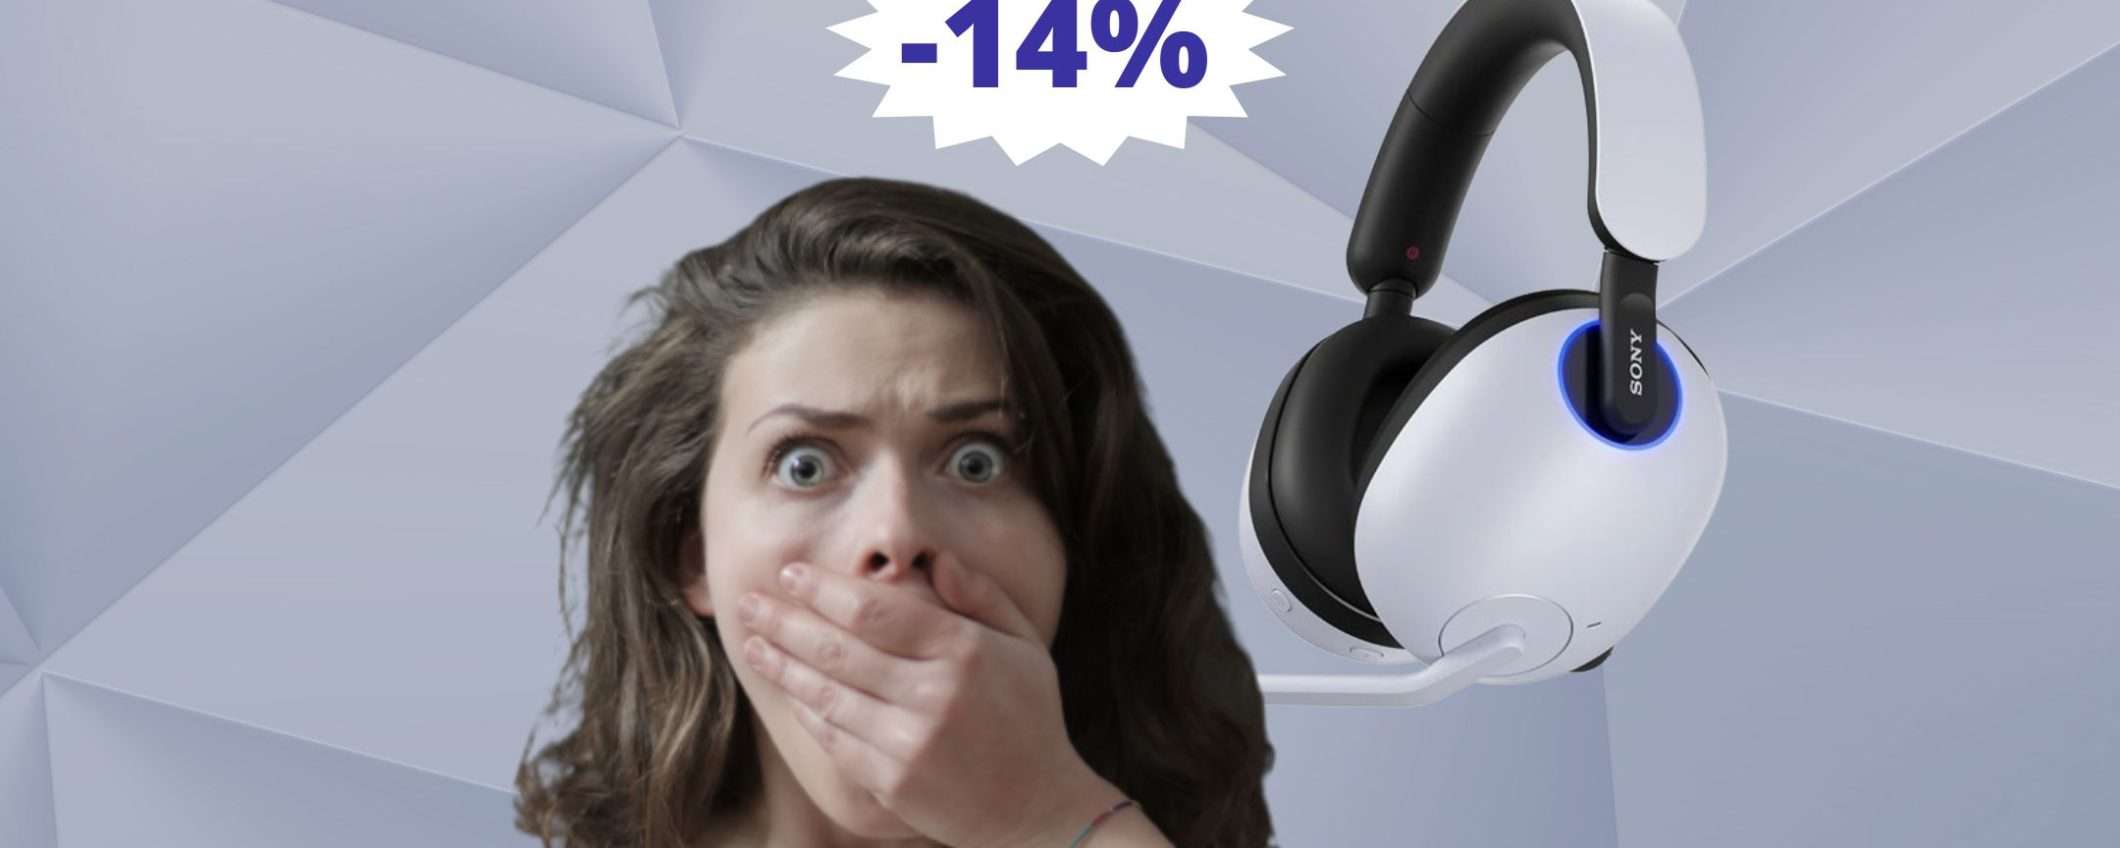 Cuffie Sony INZONE H9: IMABATTIBILI a questo prezzo (-14%)